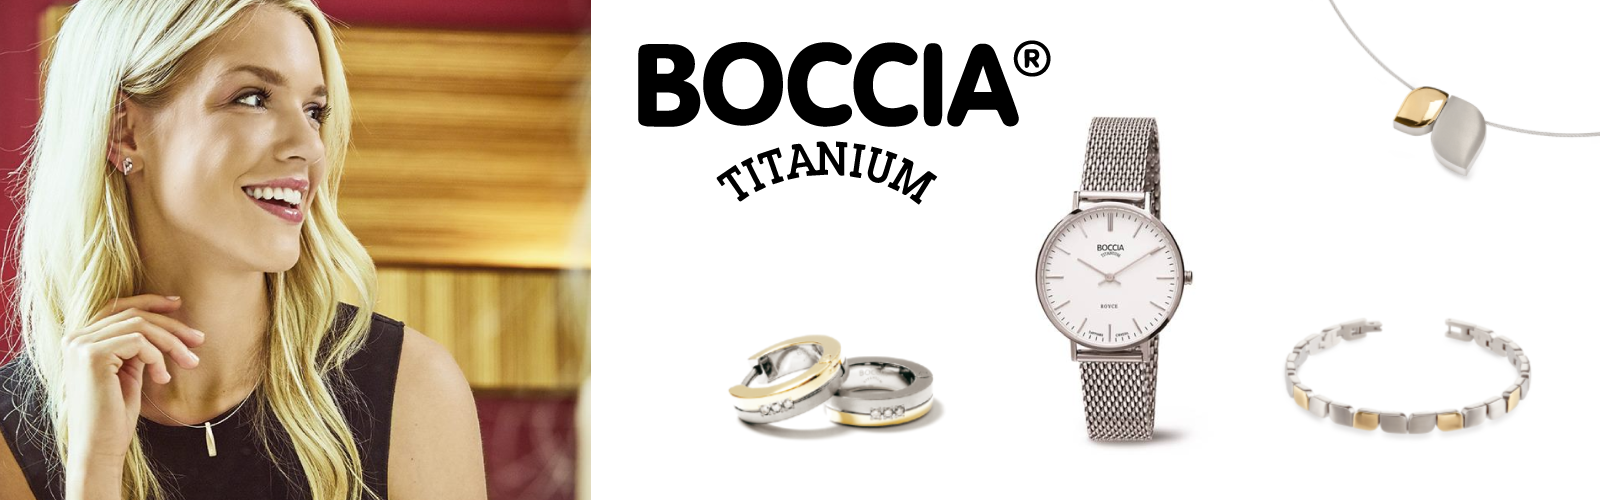 Boccia-titanium-sieraden-anti-allergeen-vindt-je-bij-Wolters-Juweliers-dichtbij Hoogeveen en Hardenberg